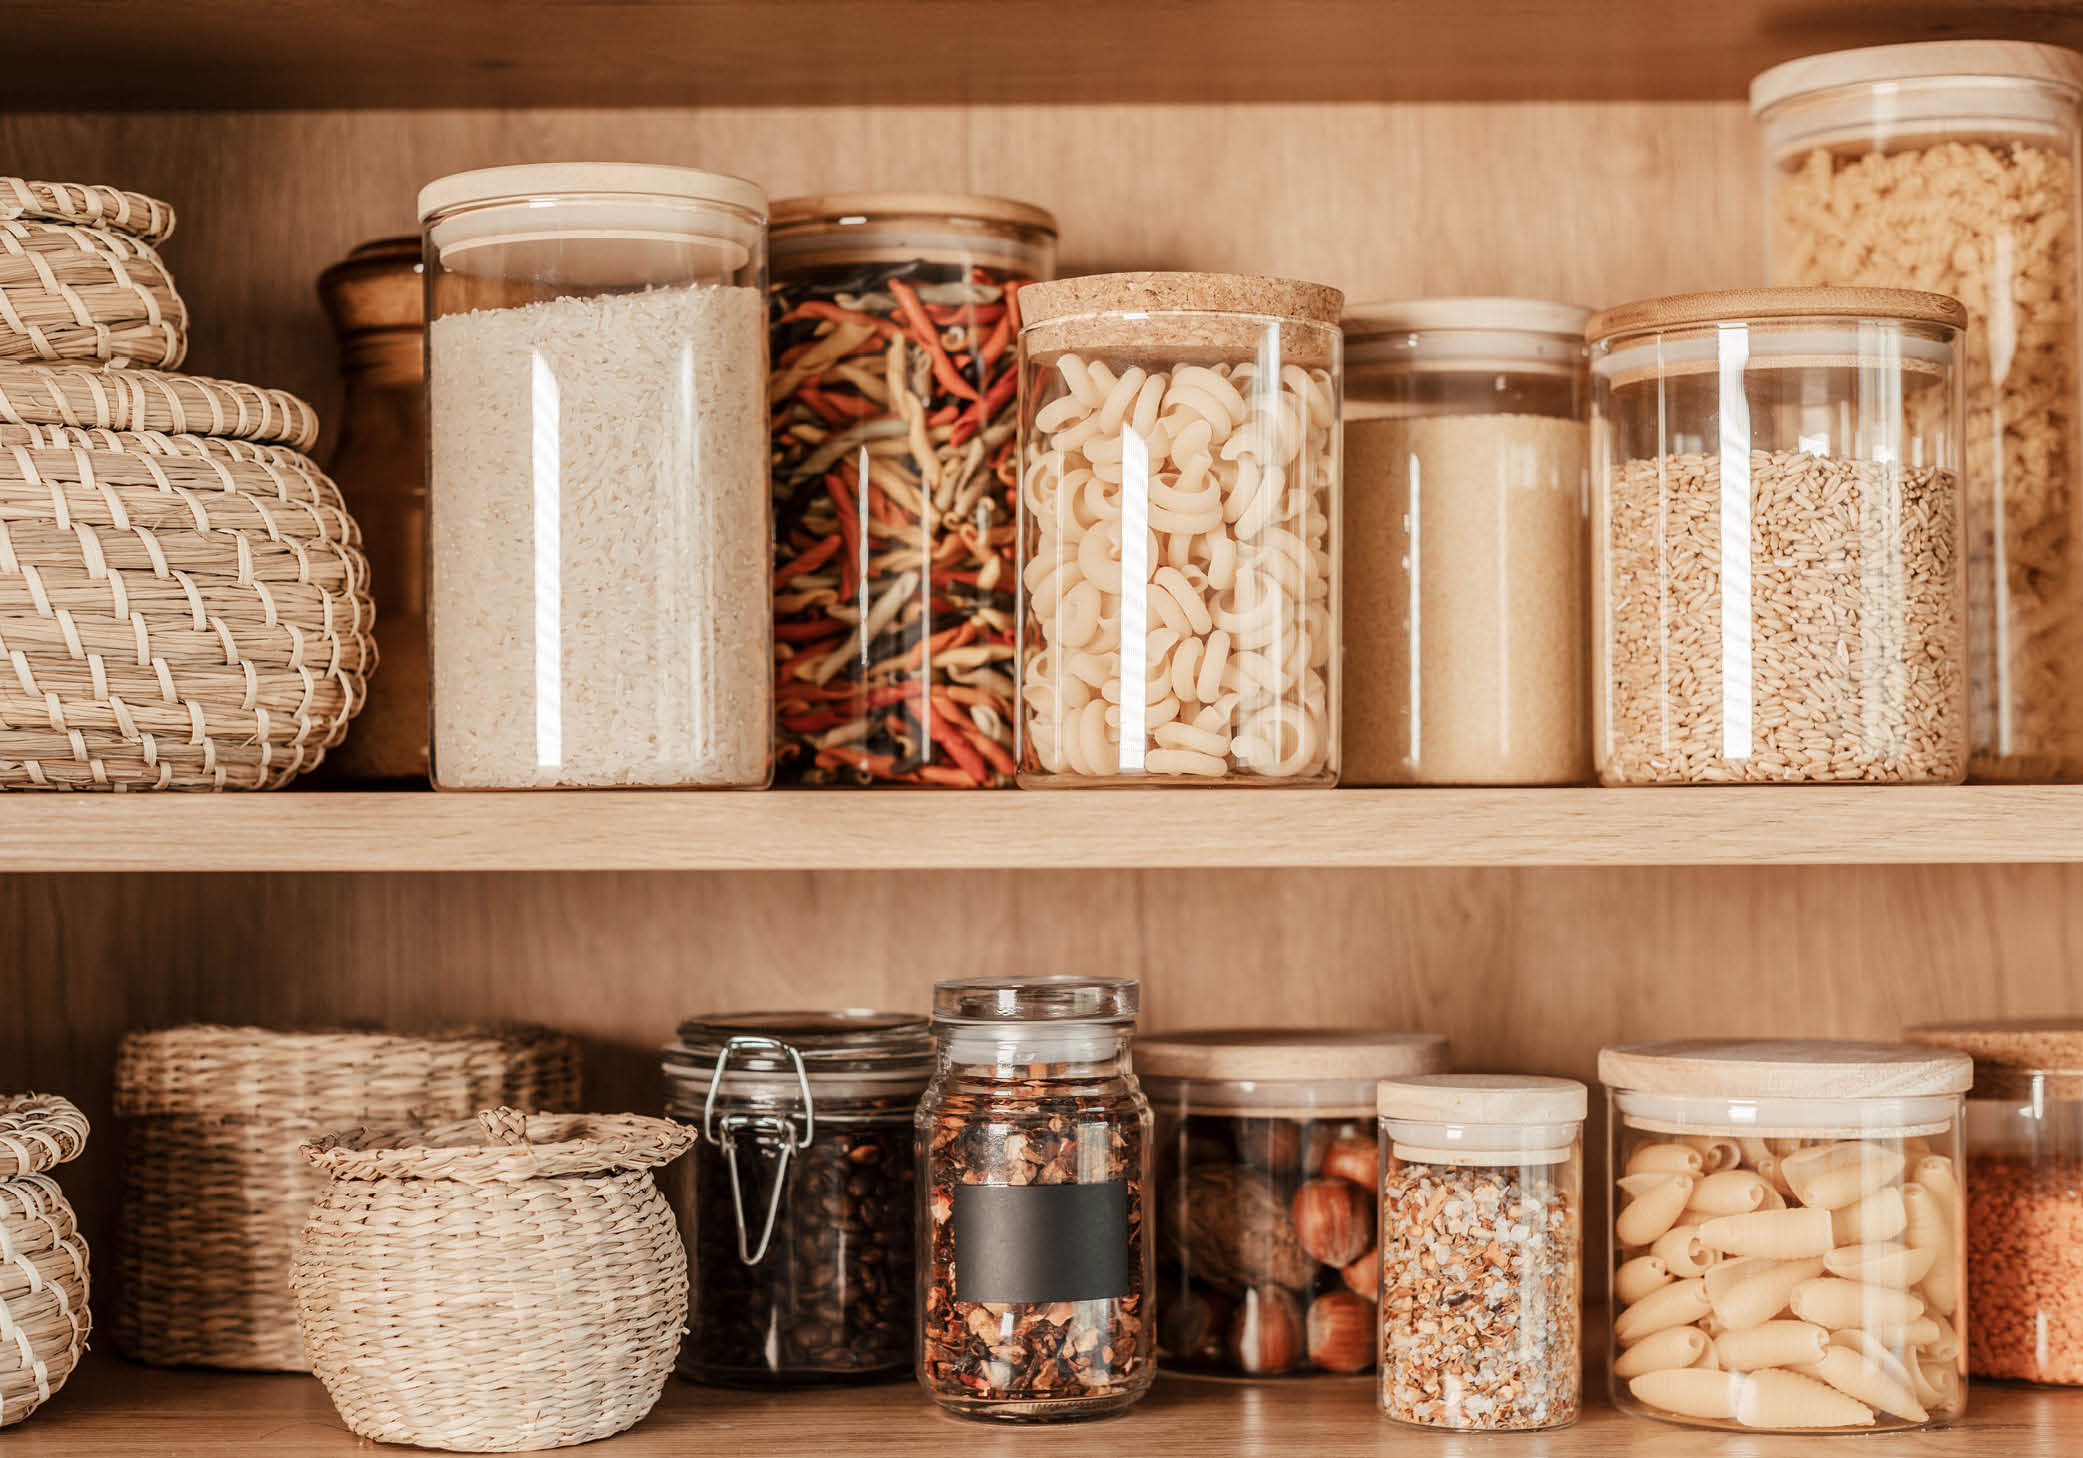 pantry organized with jars